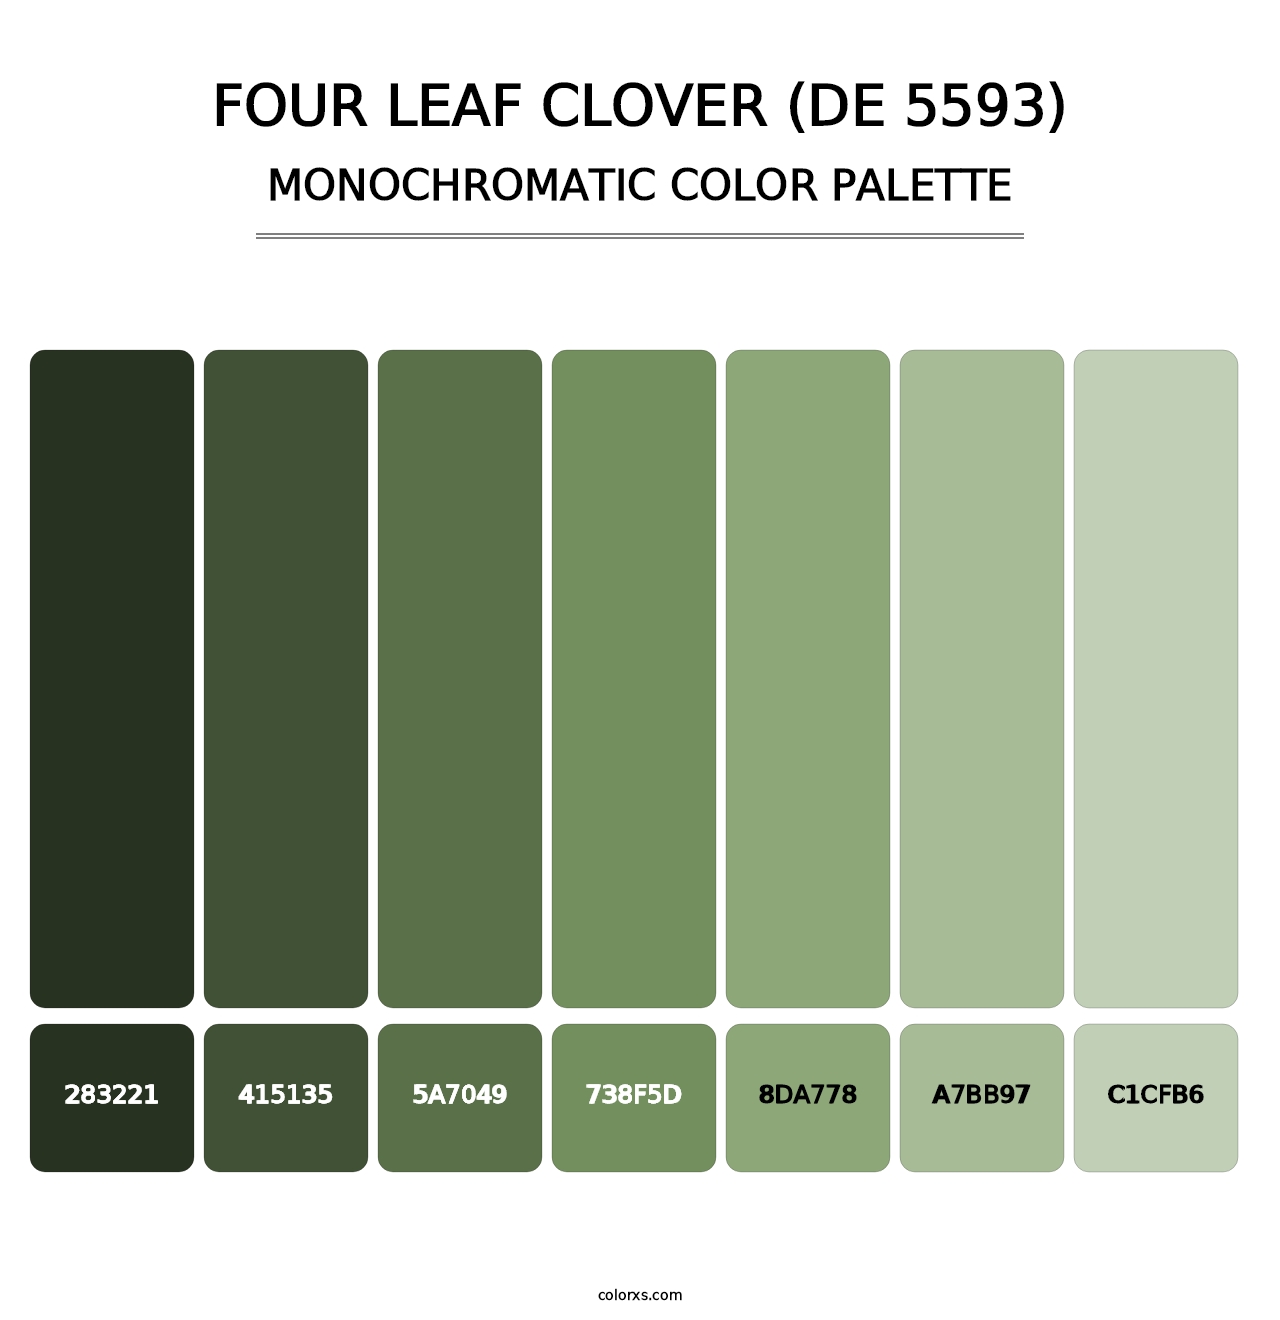 Four Leaf Clover (DE 5593) - Monochromatic Color Palette